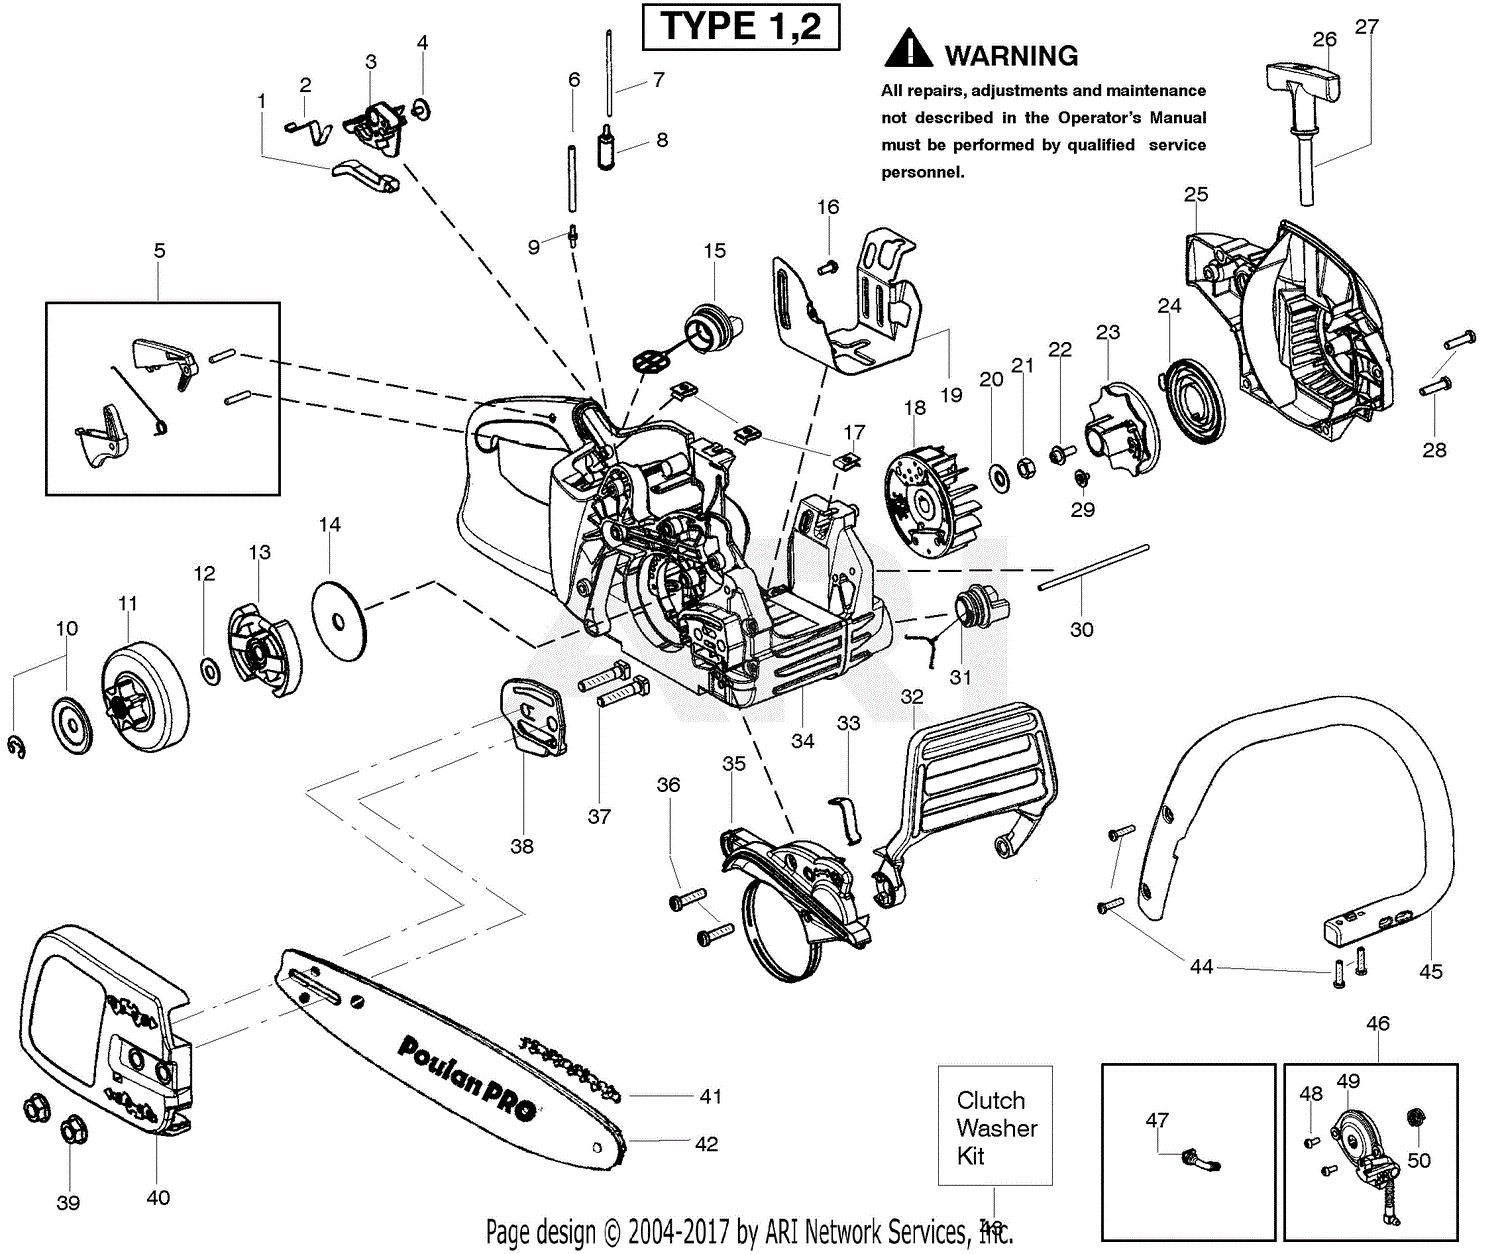 Poulan PP4018 Poulan Pro Gas Saw Type 1, 4018Poulan Pro Parts Diagram